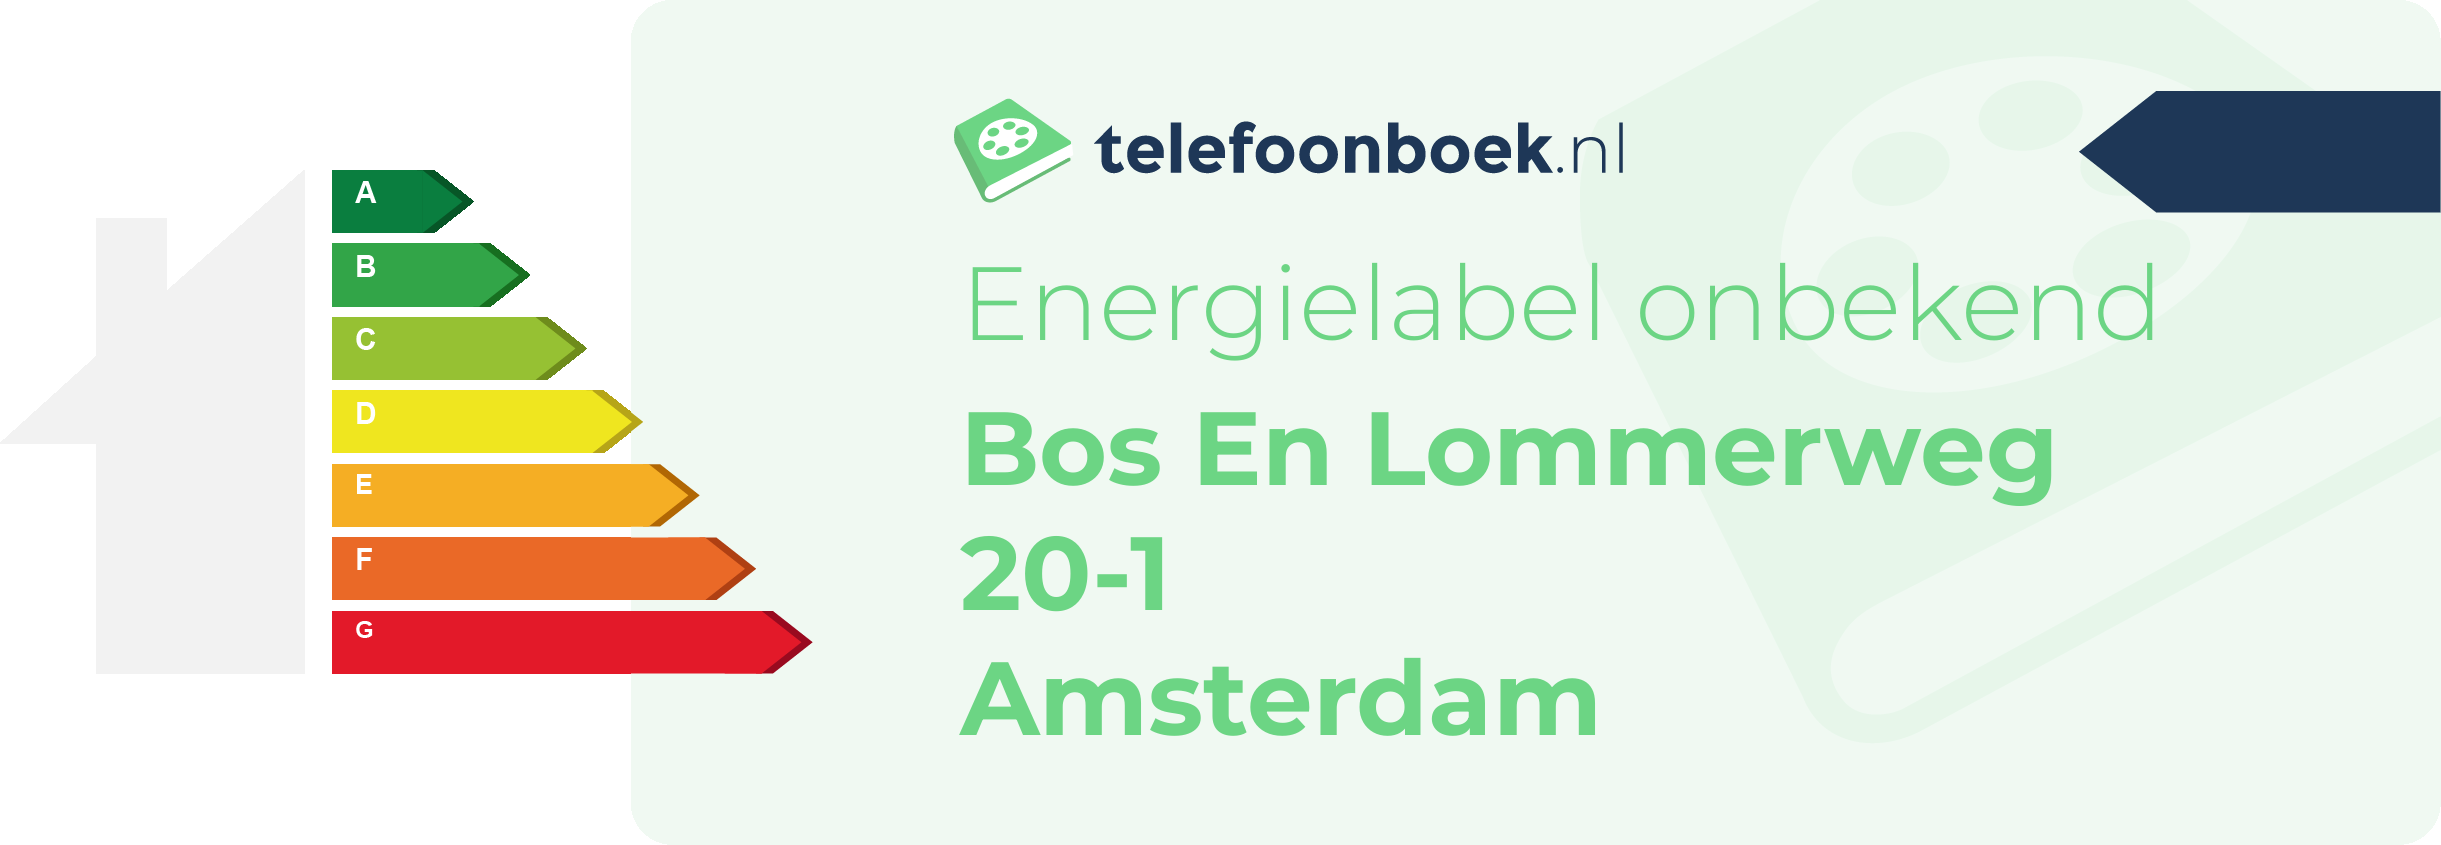 Energielabel Bos En Lommerweg 20-1 Amsterdam